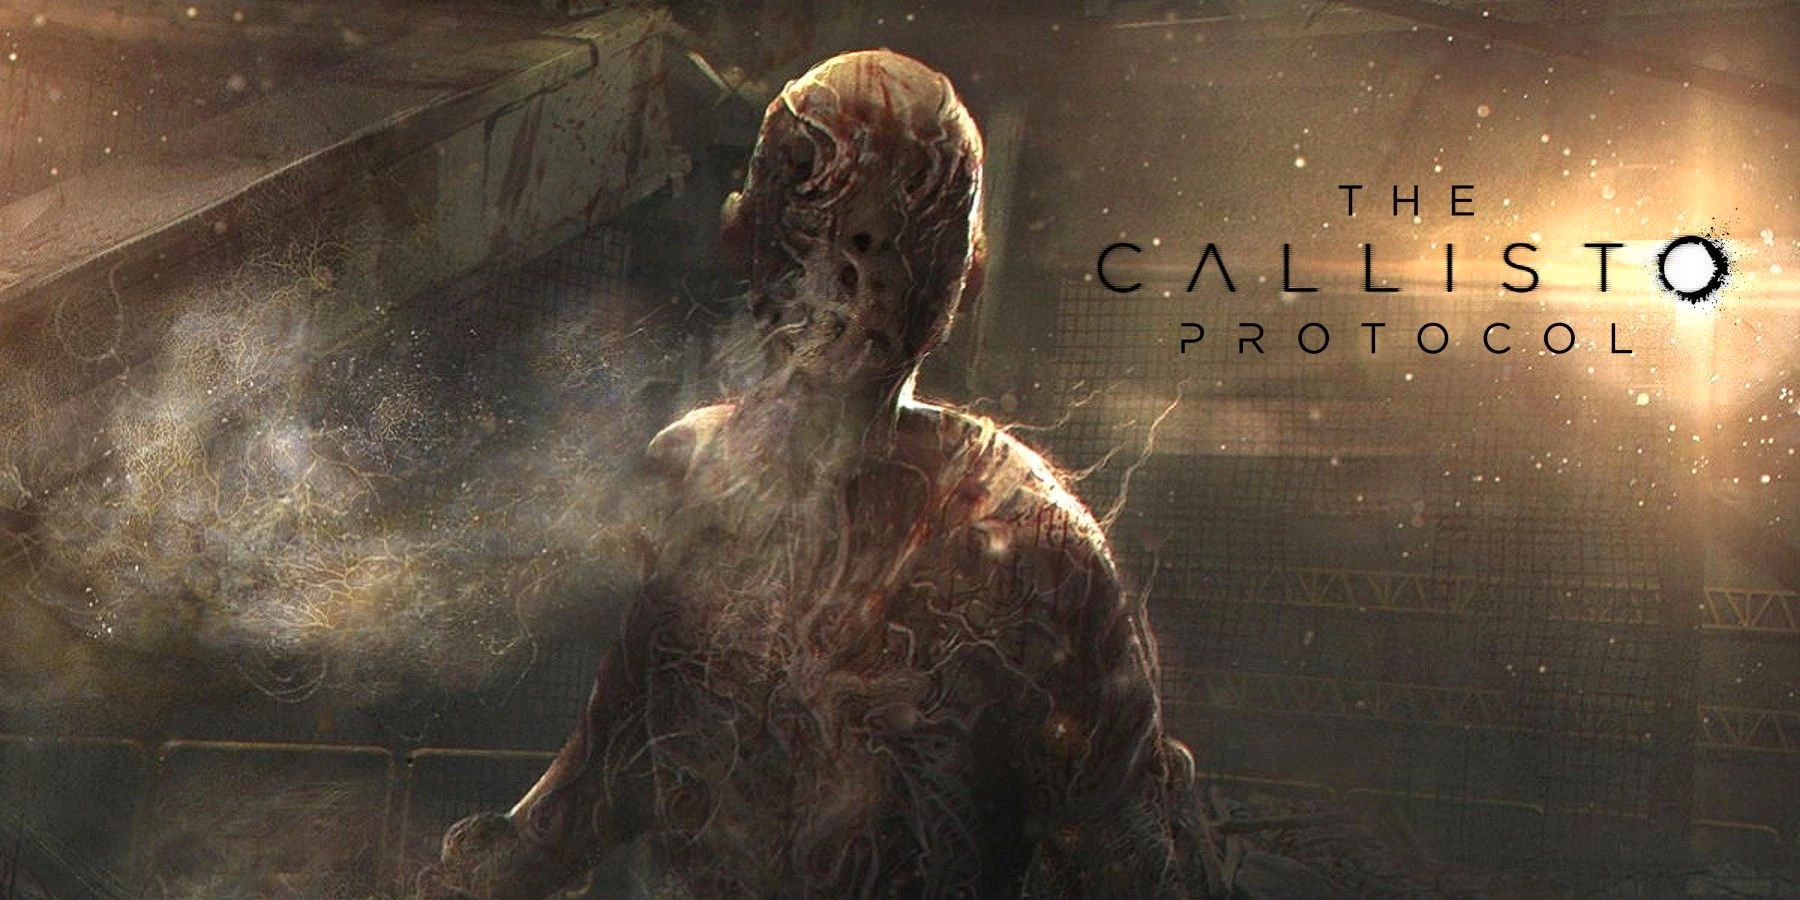 「The Callisto Protocol」の新しいゲームプレイビデオが公開されました。